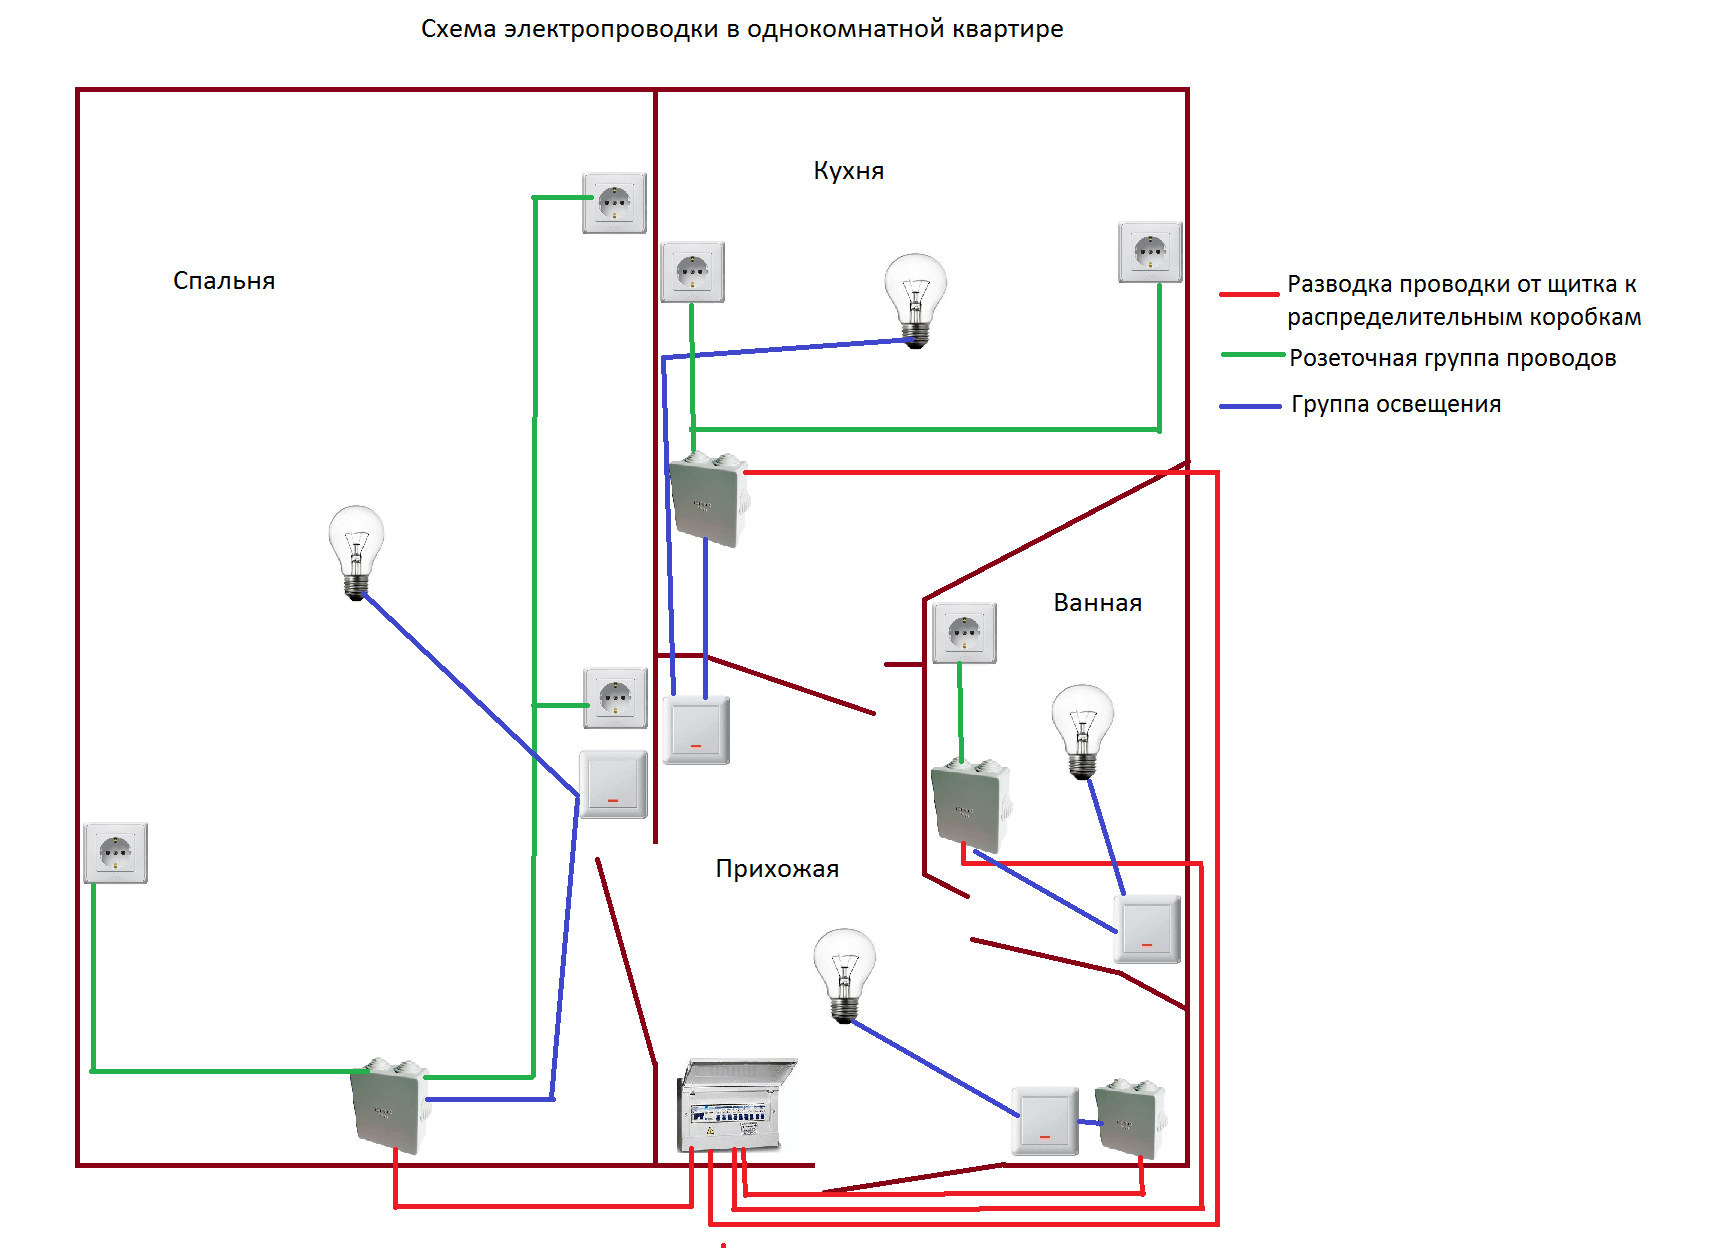 Как провести электропроводку. Схема проводки подключение однокомнотоной кв. Схема проводки электричества в квартире 1 комнатной. Схема присоединения проводов в квартирной проводки. Схема разводки проводки в однокомнатной квартире.